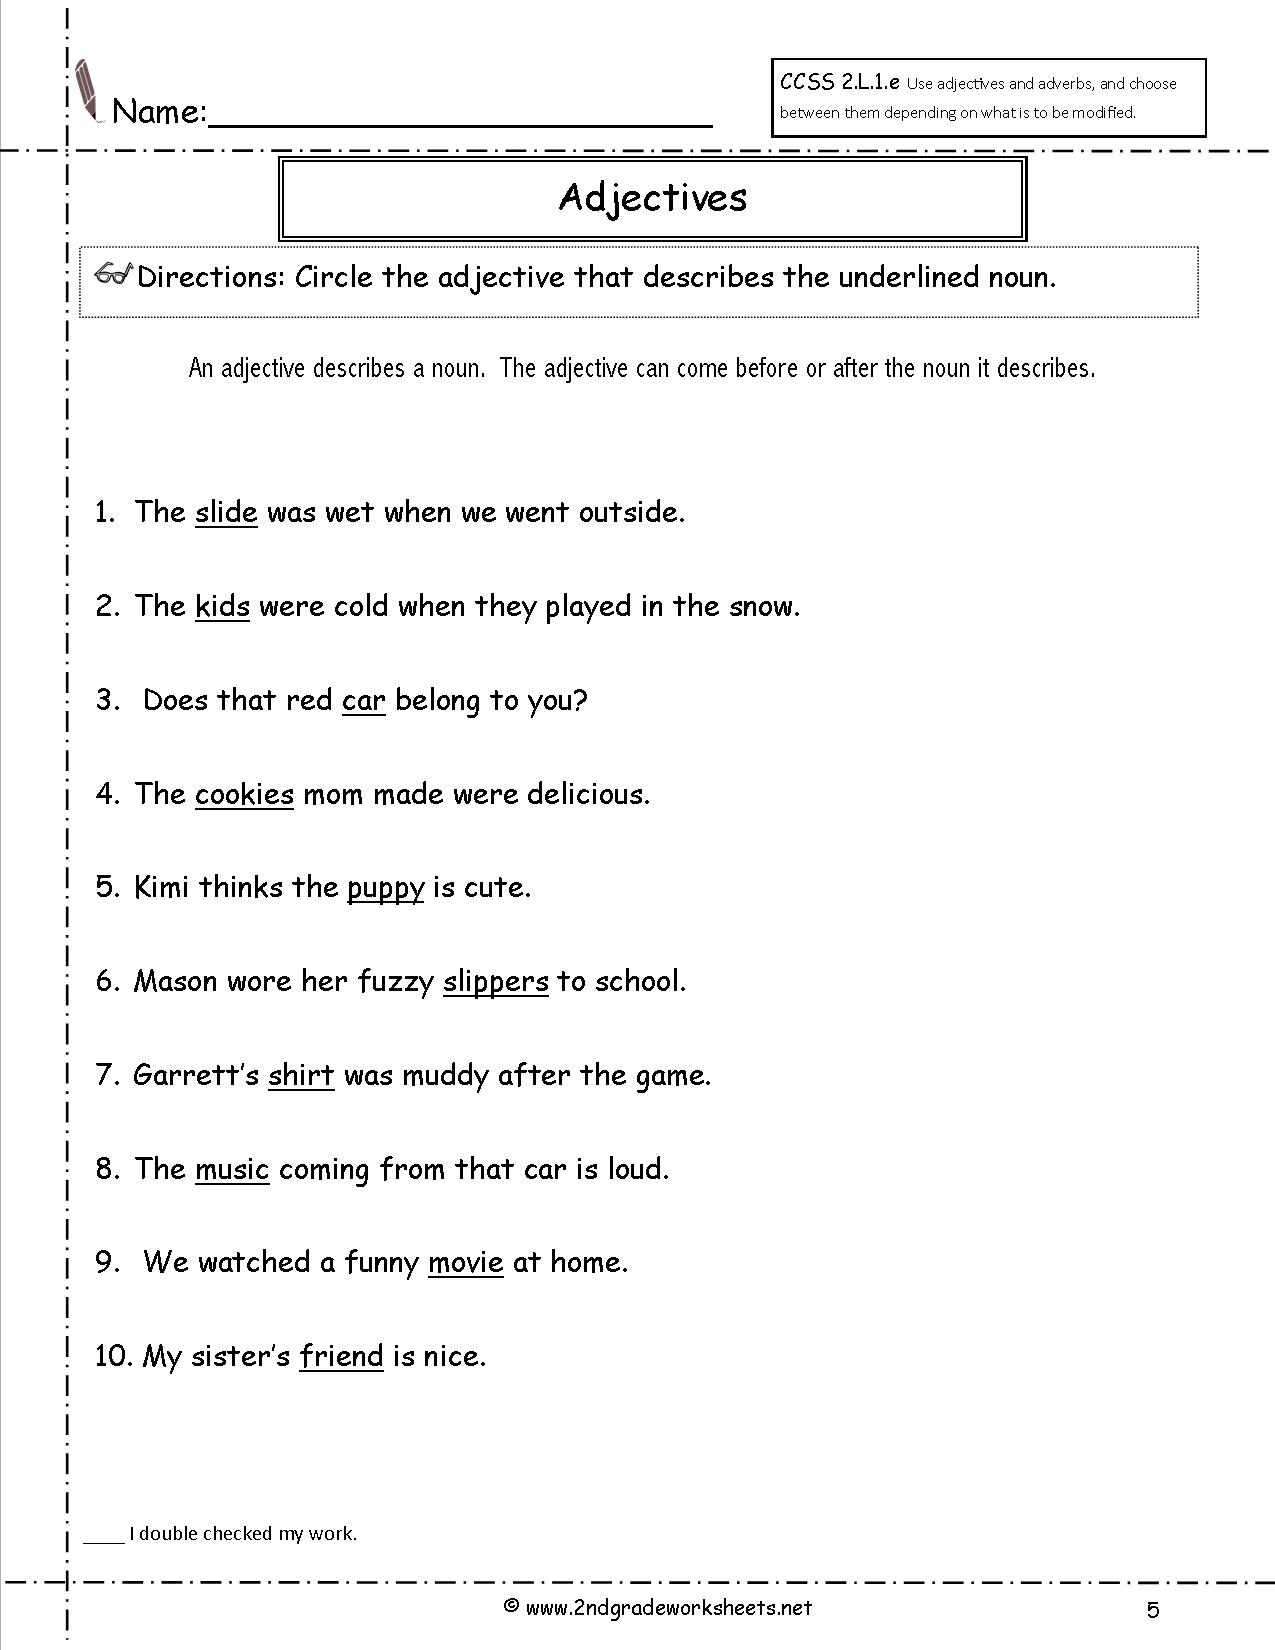 Comparing Adjectives Worksheet Grade 5 Pdf